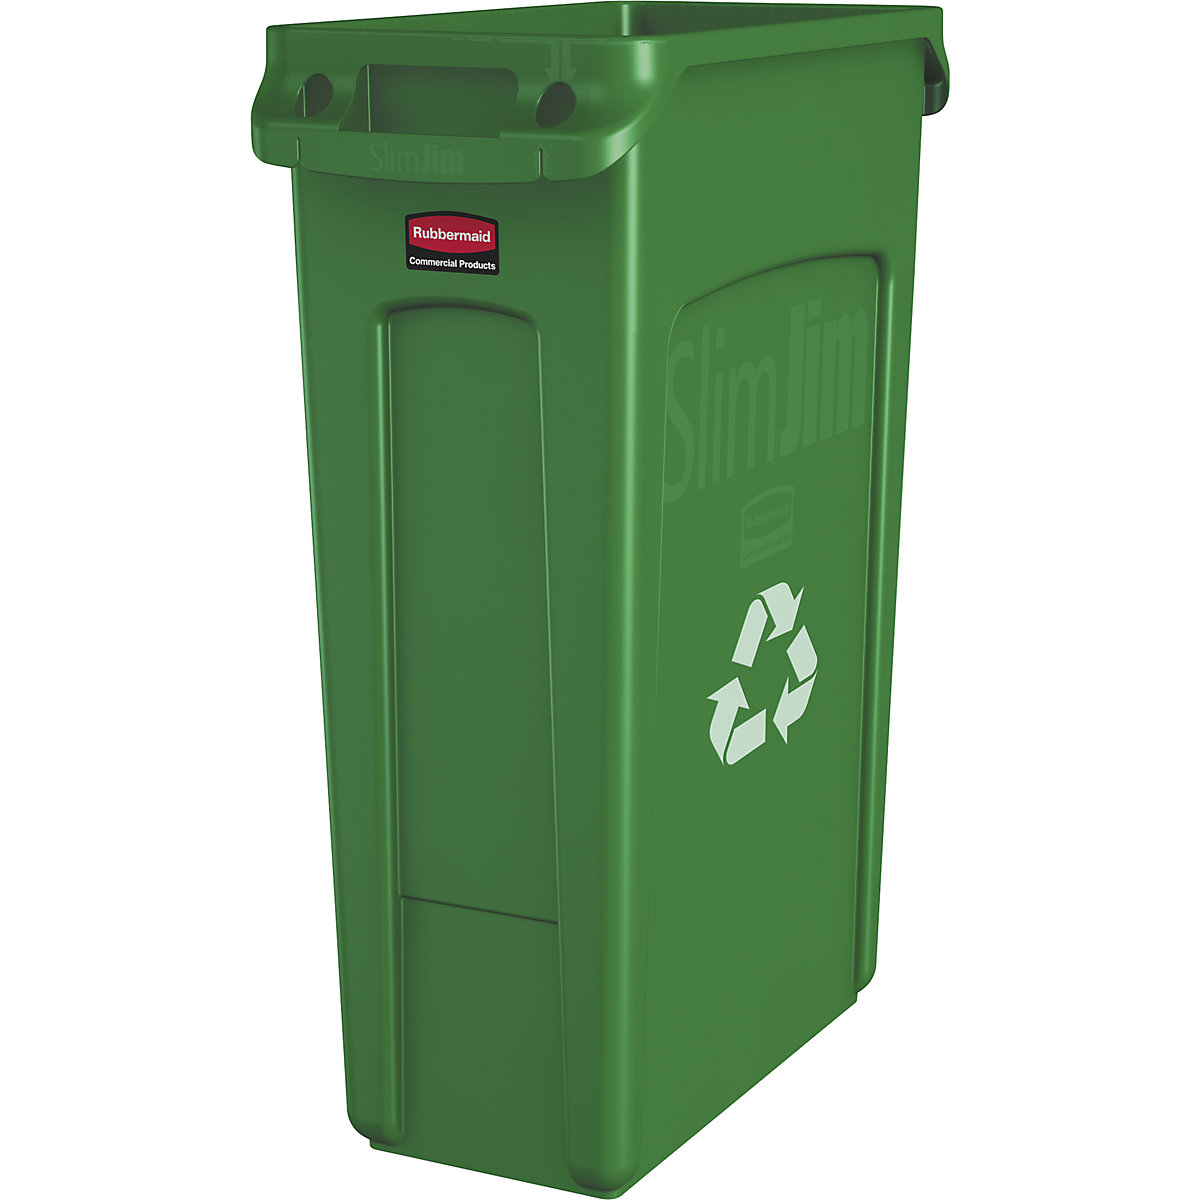 Nádoba na tříděný odpad/odpadkový koš SLIM JIM® – Rubbermaid, objem 87 l, s větracími kanálky, zelená se symbolem recyklace-15